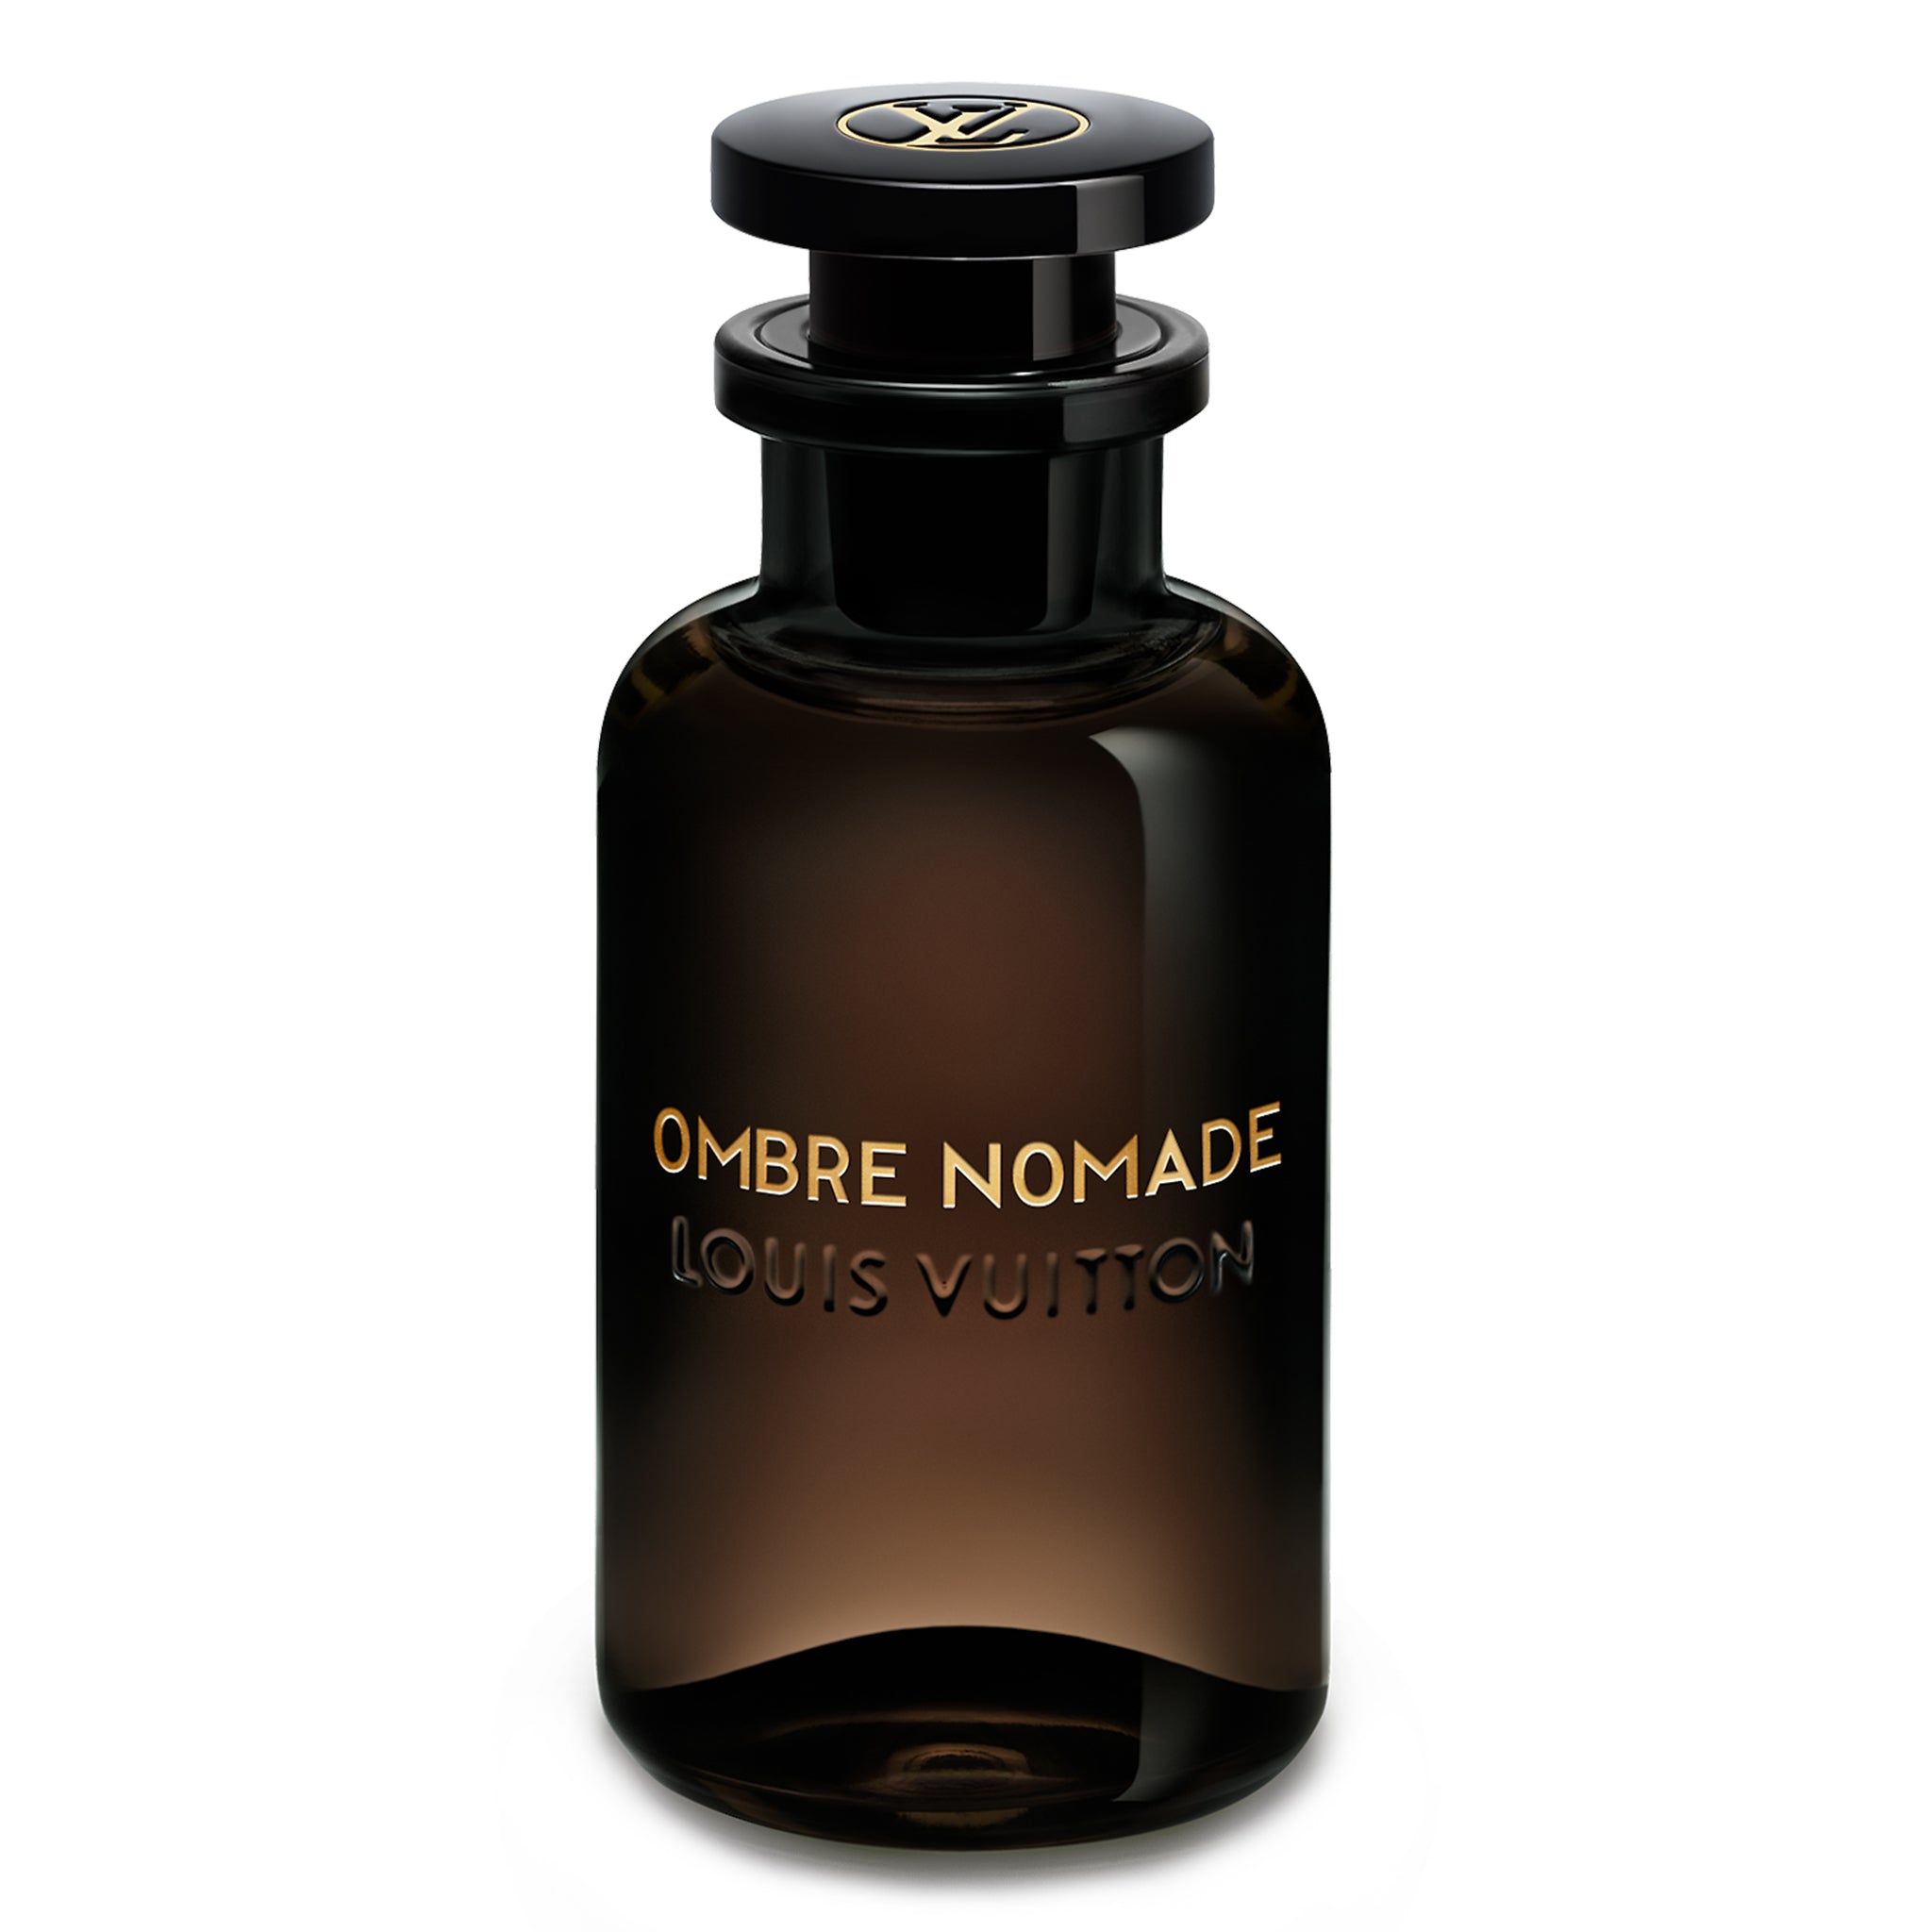 Image of Louis Vuitton Ombre Nomade Eau De Parfum 100ml